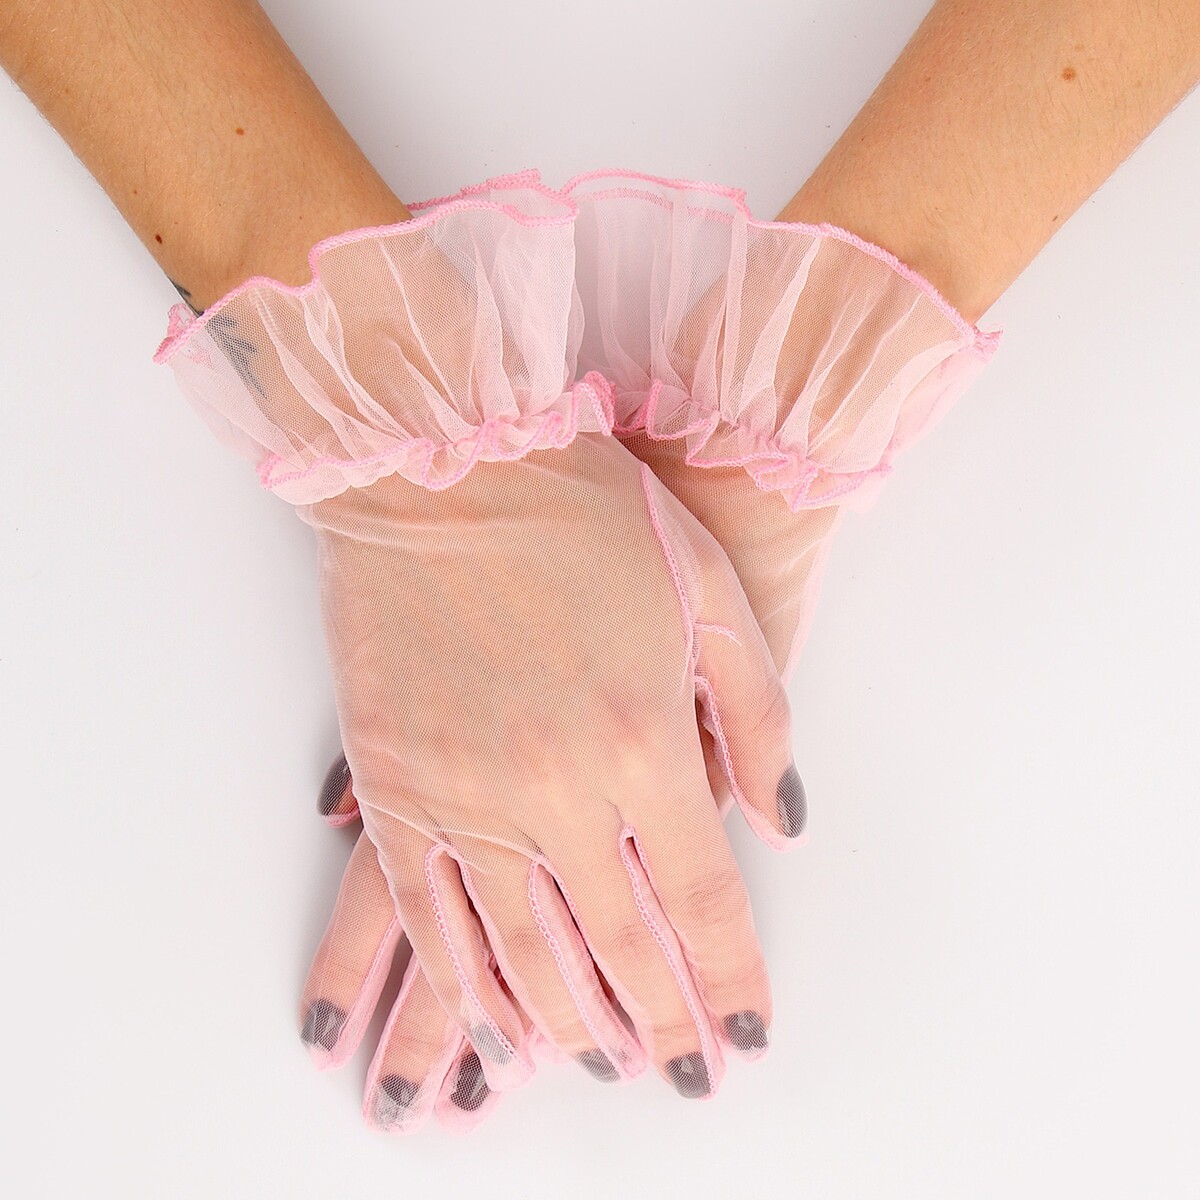 Карнавальный аксессуар - перчатки прозрачные с юбочкой, цвет розовый карнавальный аксессуар перчатки прозрачные розовый